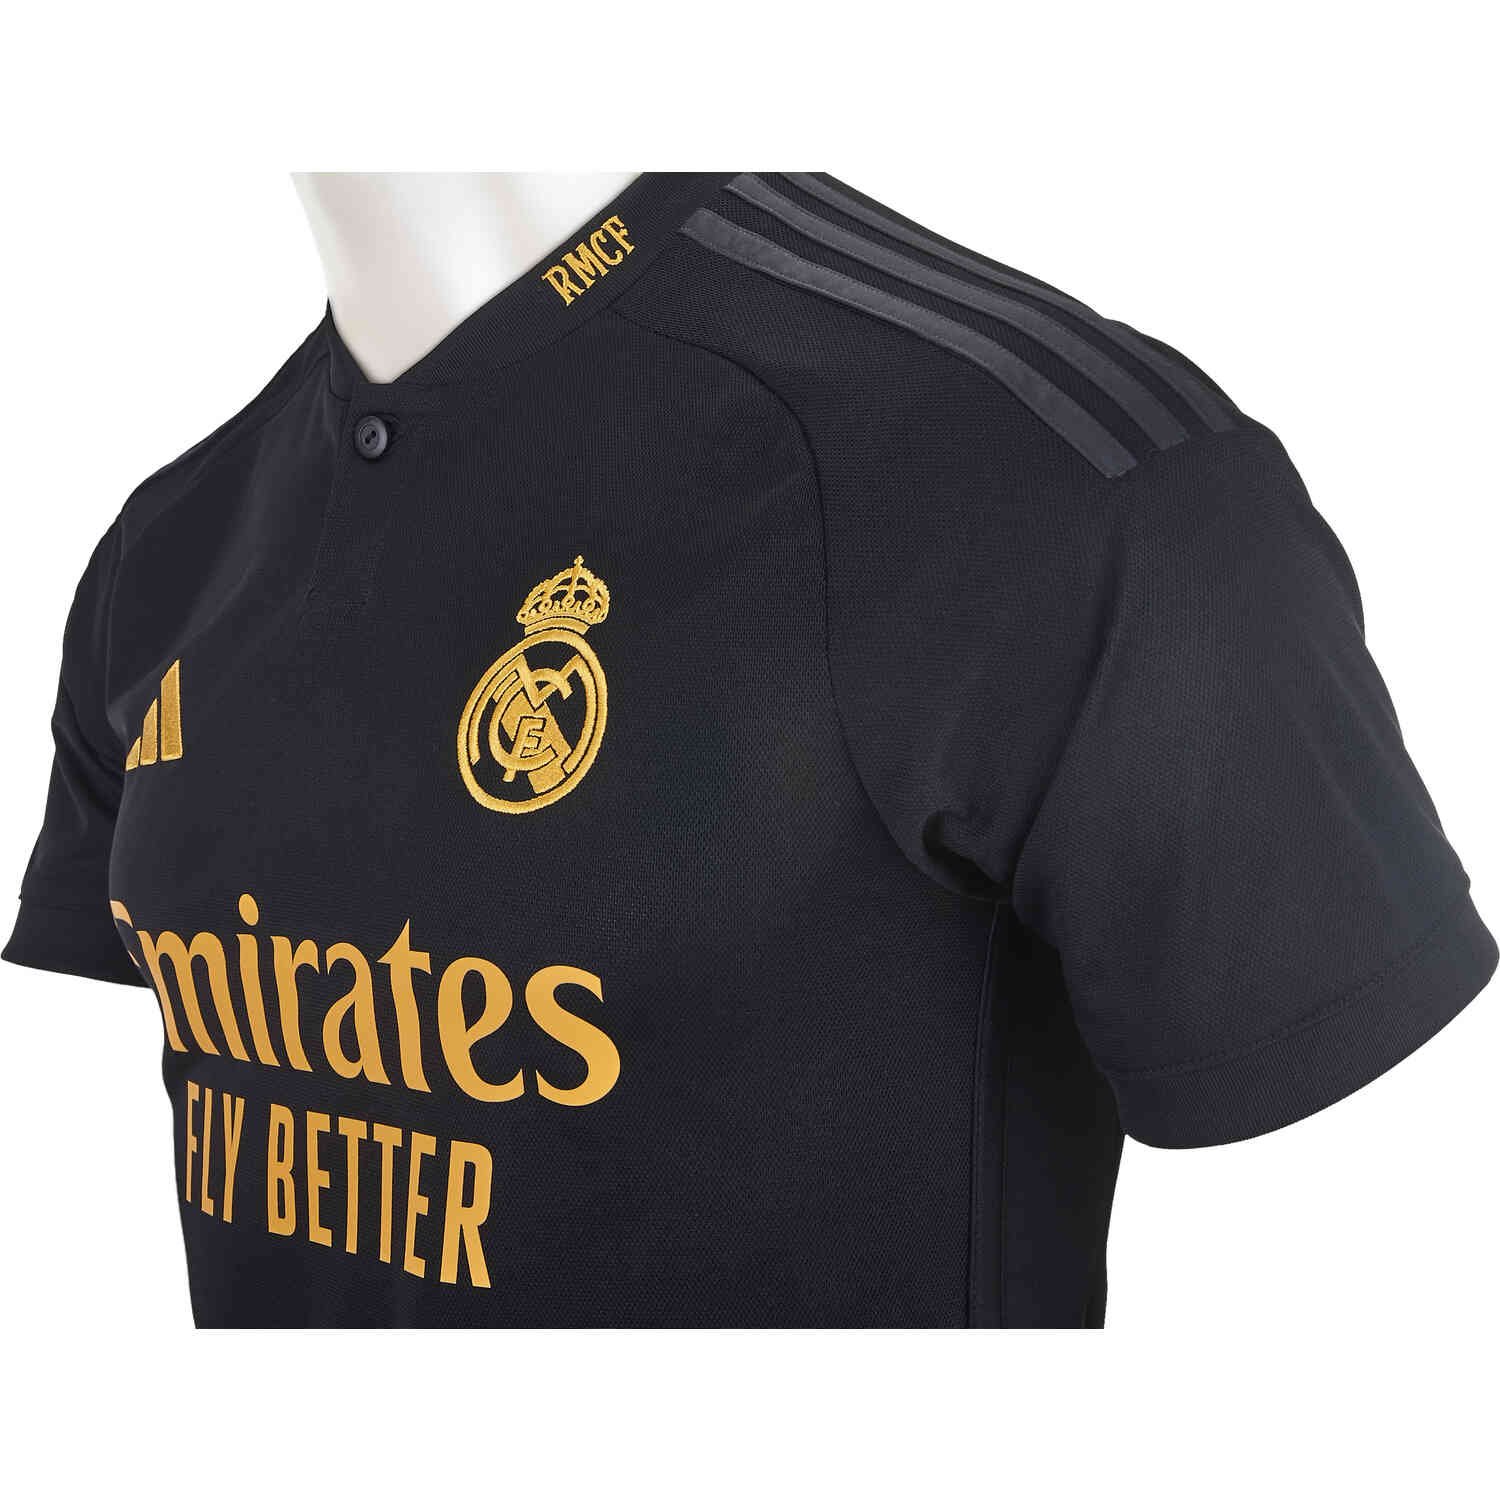 Real Madrid 2023/24 adidas Third Kit - FOOTBALL FASHION